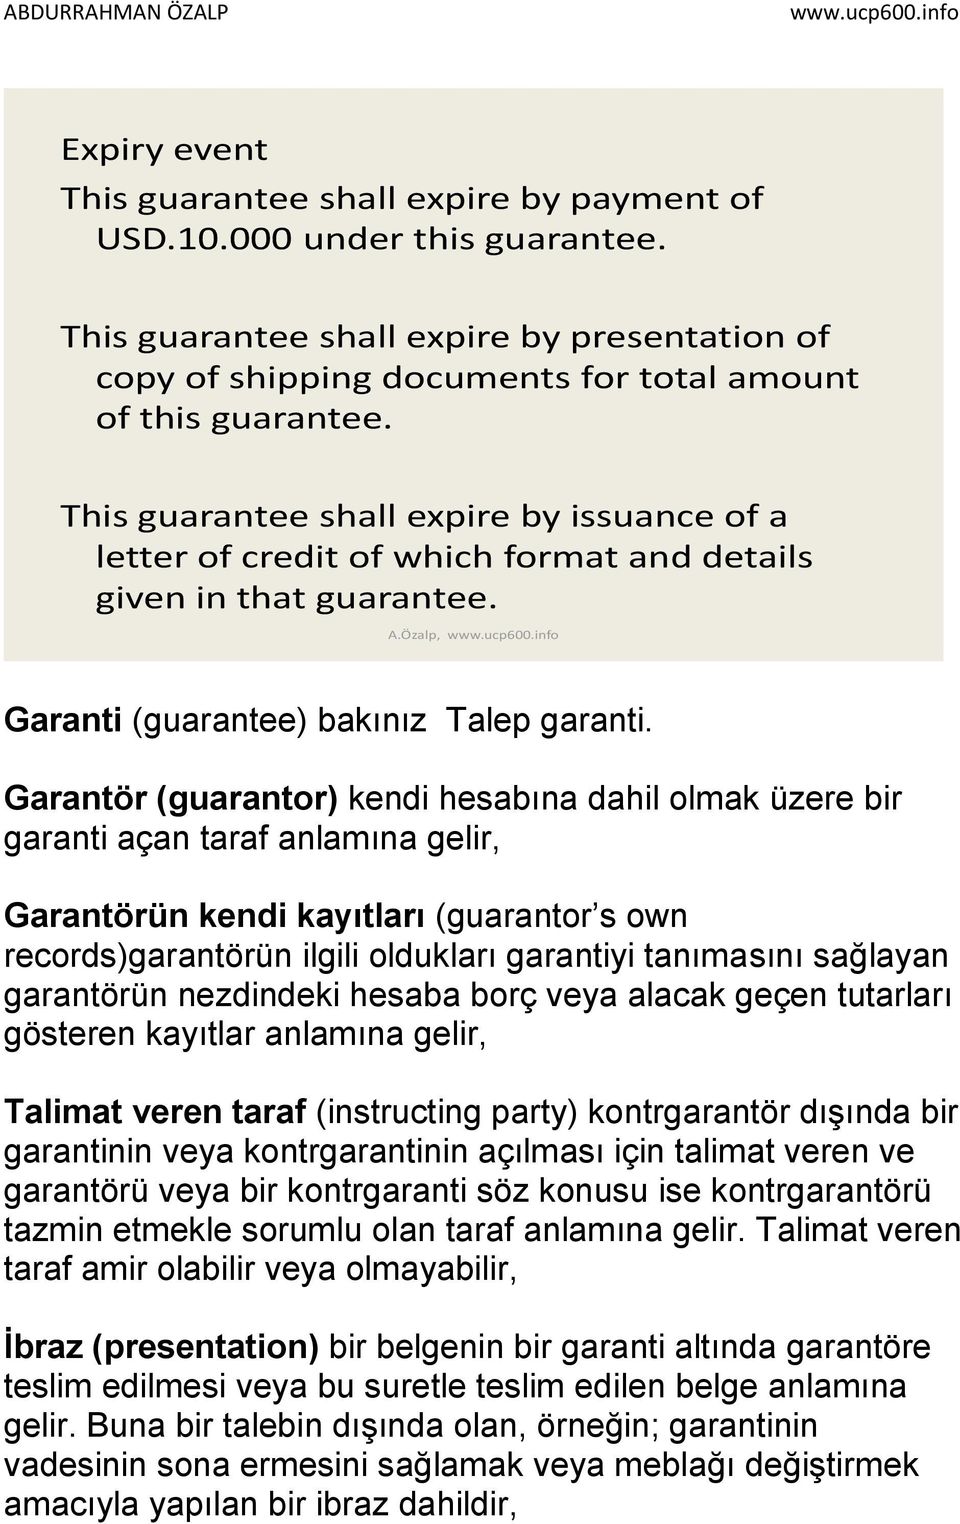 Garantör (guarantor) kendi hesabına dahil olmak üzere bir garanti açan taraf anlamına gelir, Garantörün kendi kayıtları (guarantor s own records)garantörün ilgili oldukları garantiyi tanımasını